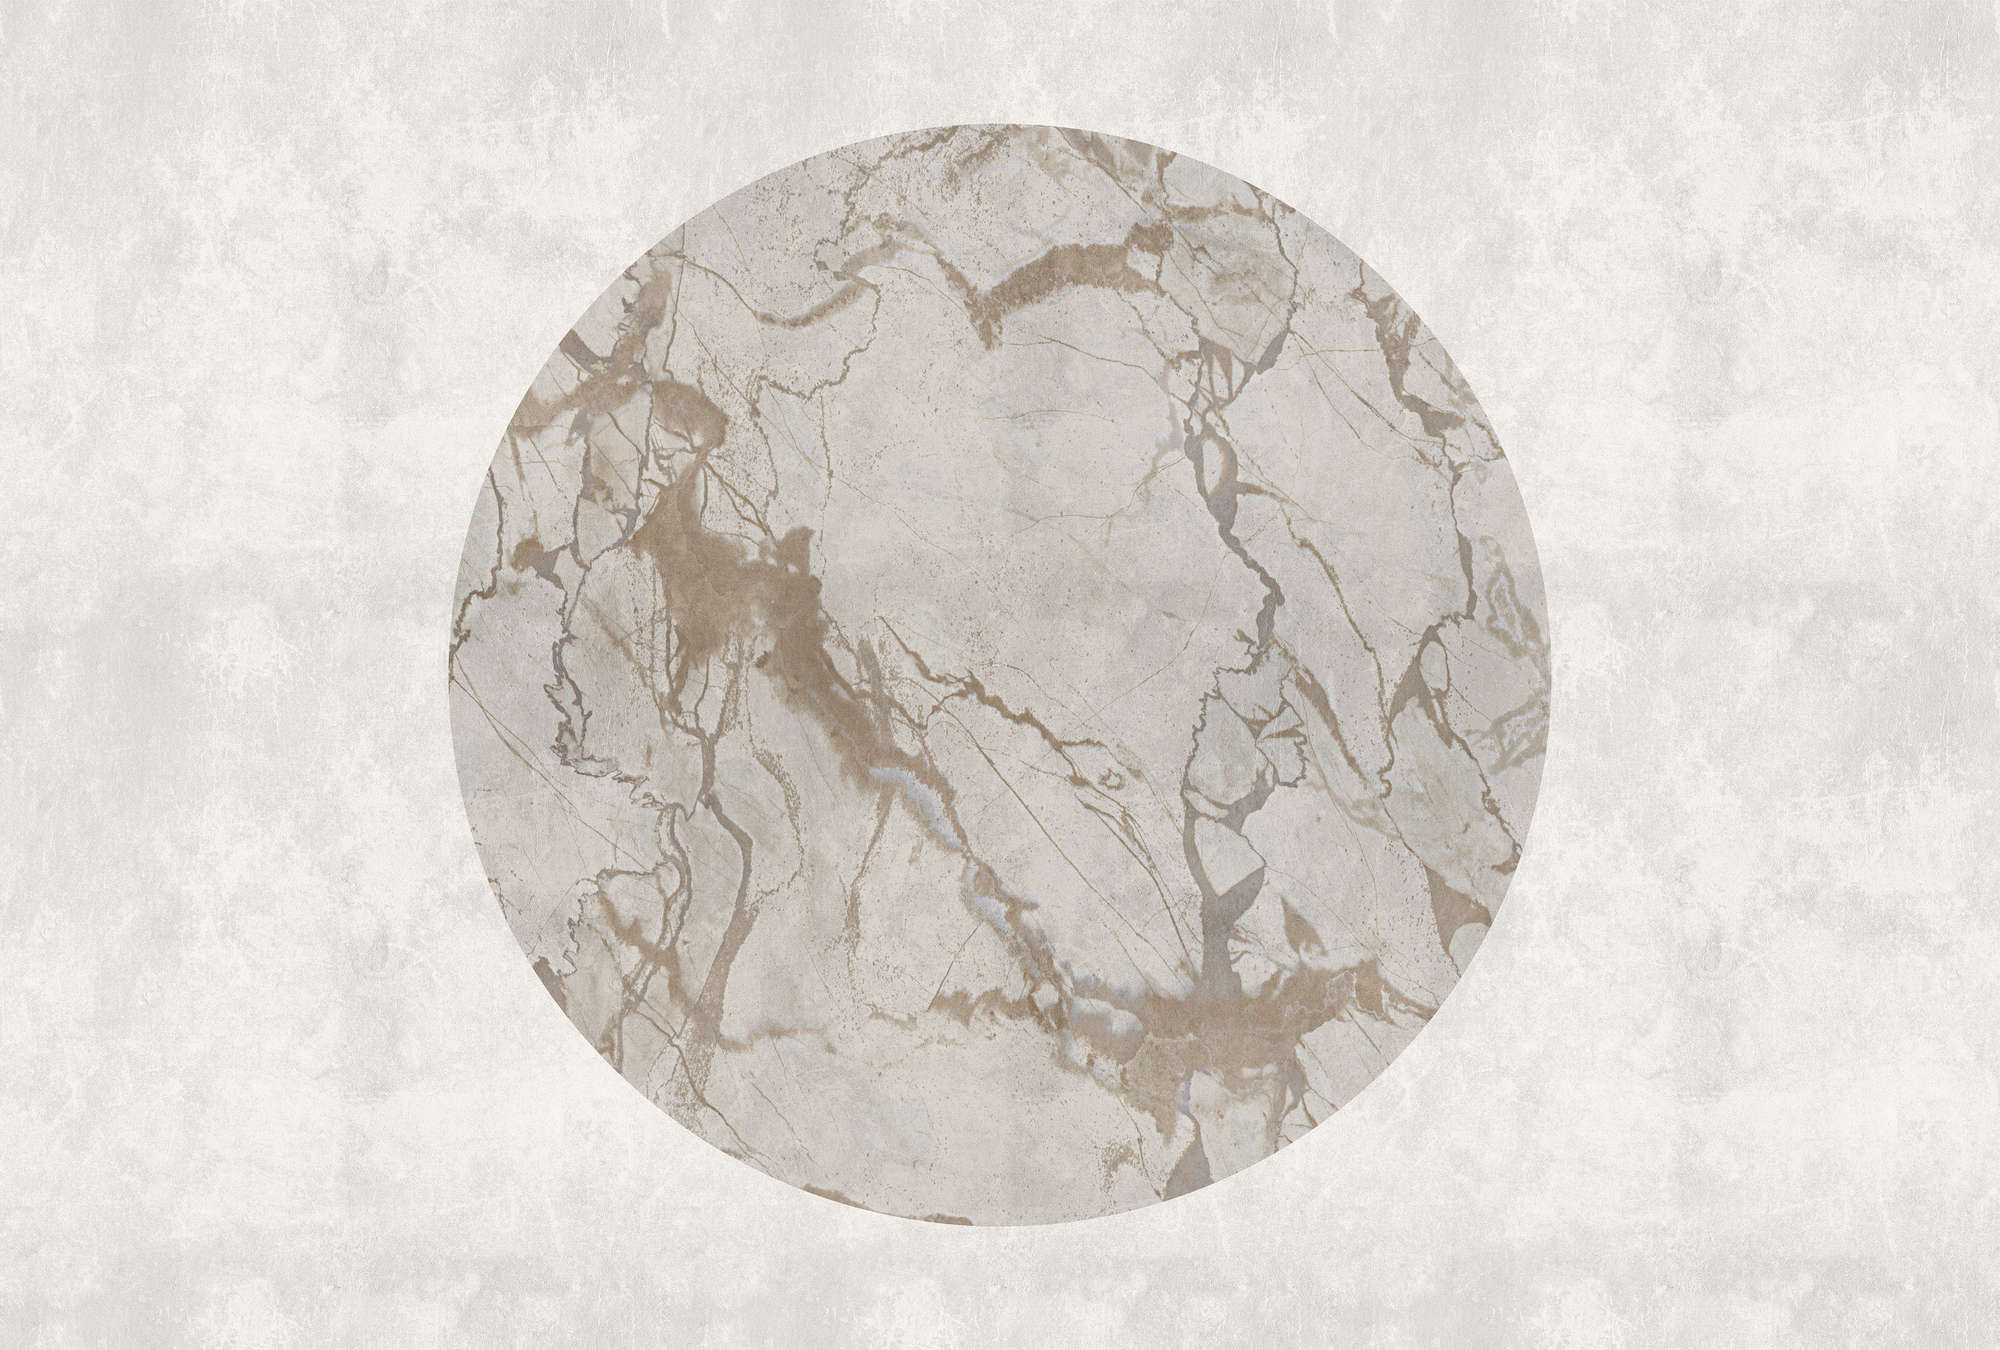             Mercurio 2 - Mural de pared de aspecto de piedra gris con efecto de mármol
        